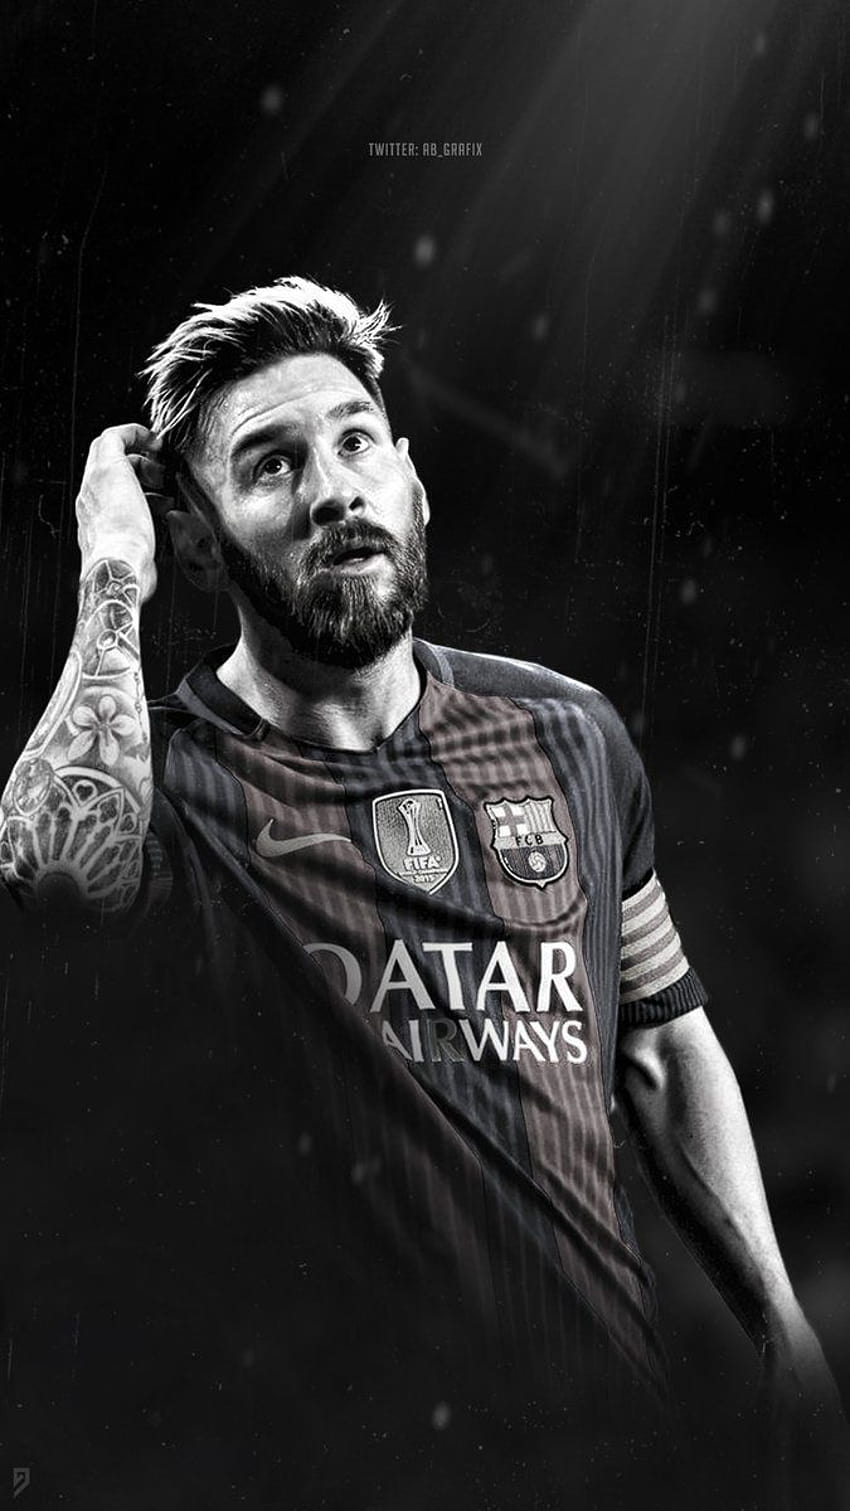 Messi với râu tóc mới trông thật sự lịch lãm và phong cách. Những ai là fan của anh ấy chắc chắn sẽ không muốn bỏ qua bức ảnh này. Hãy xem và thưởng thức!